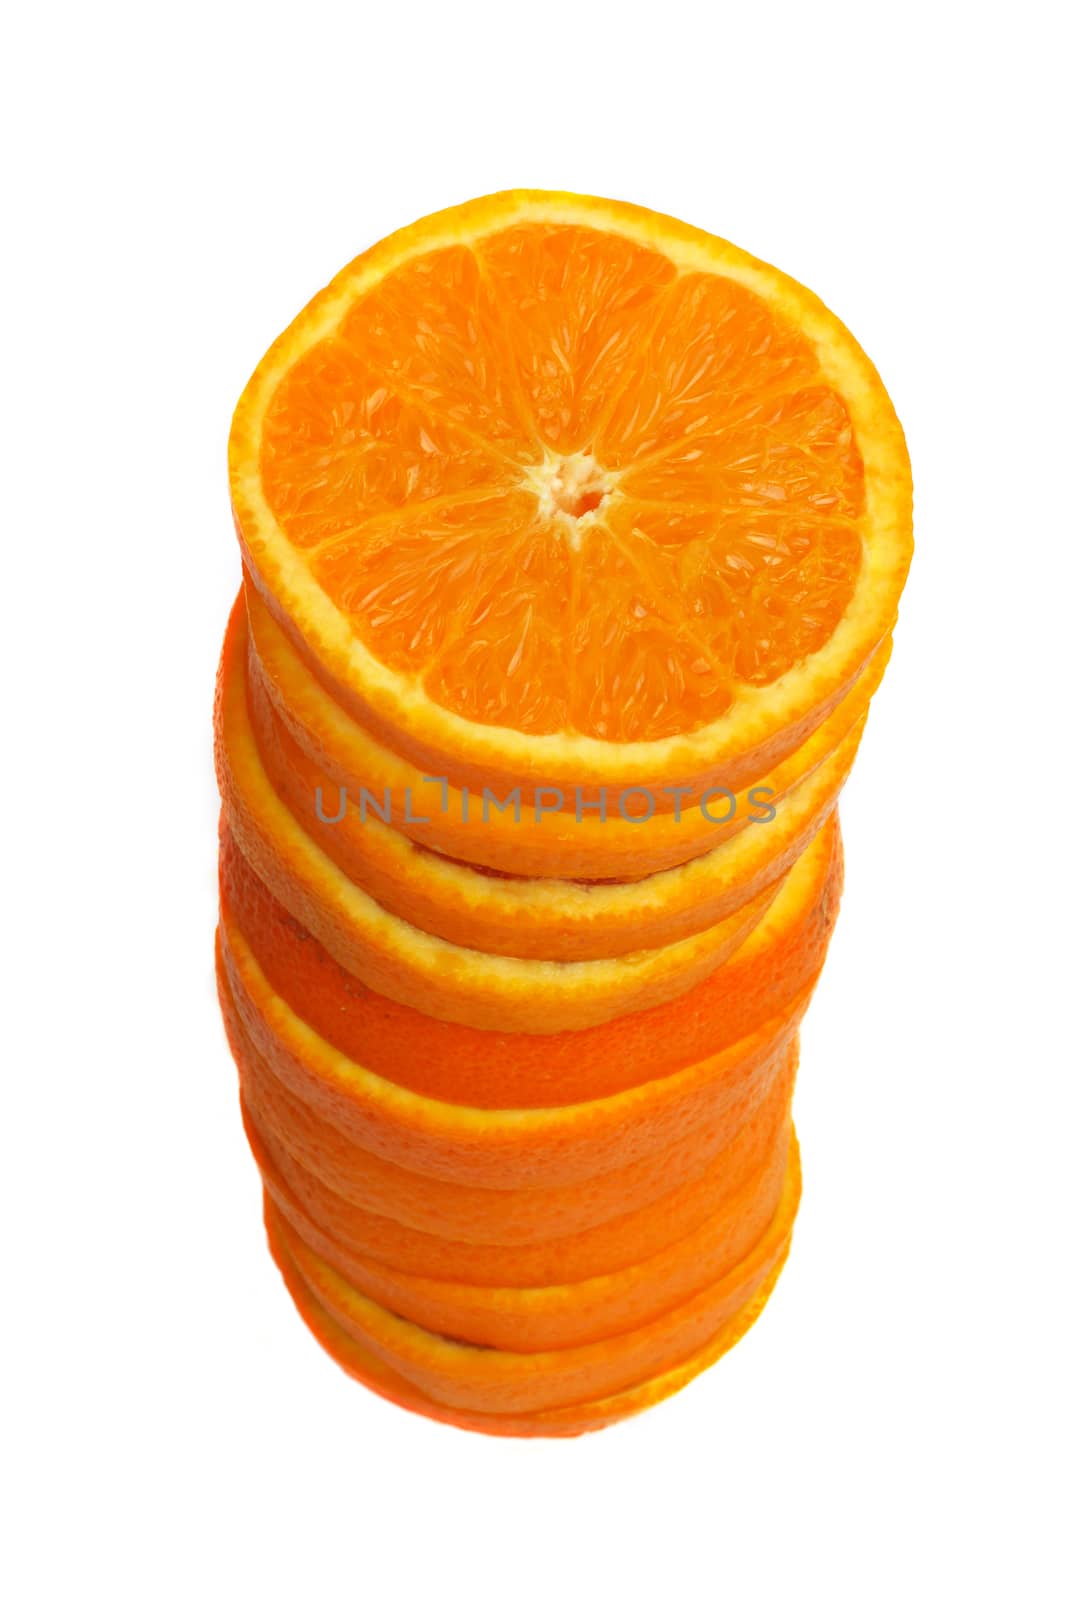 Stack of orange slices by destillat